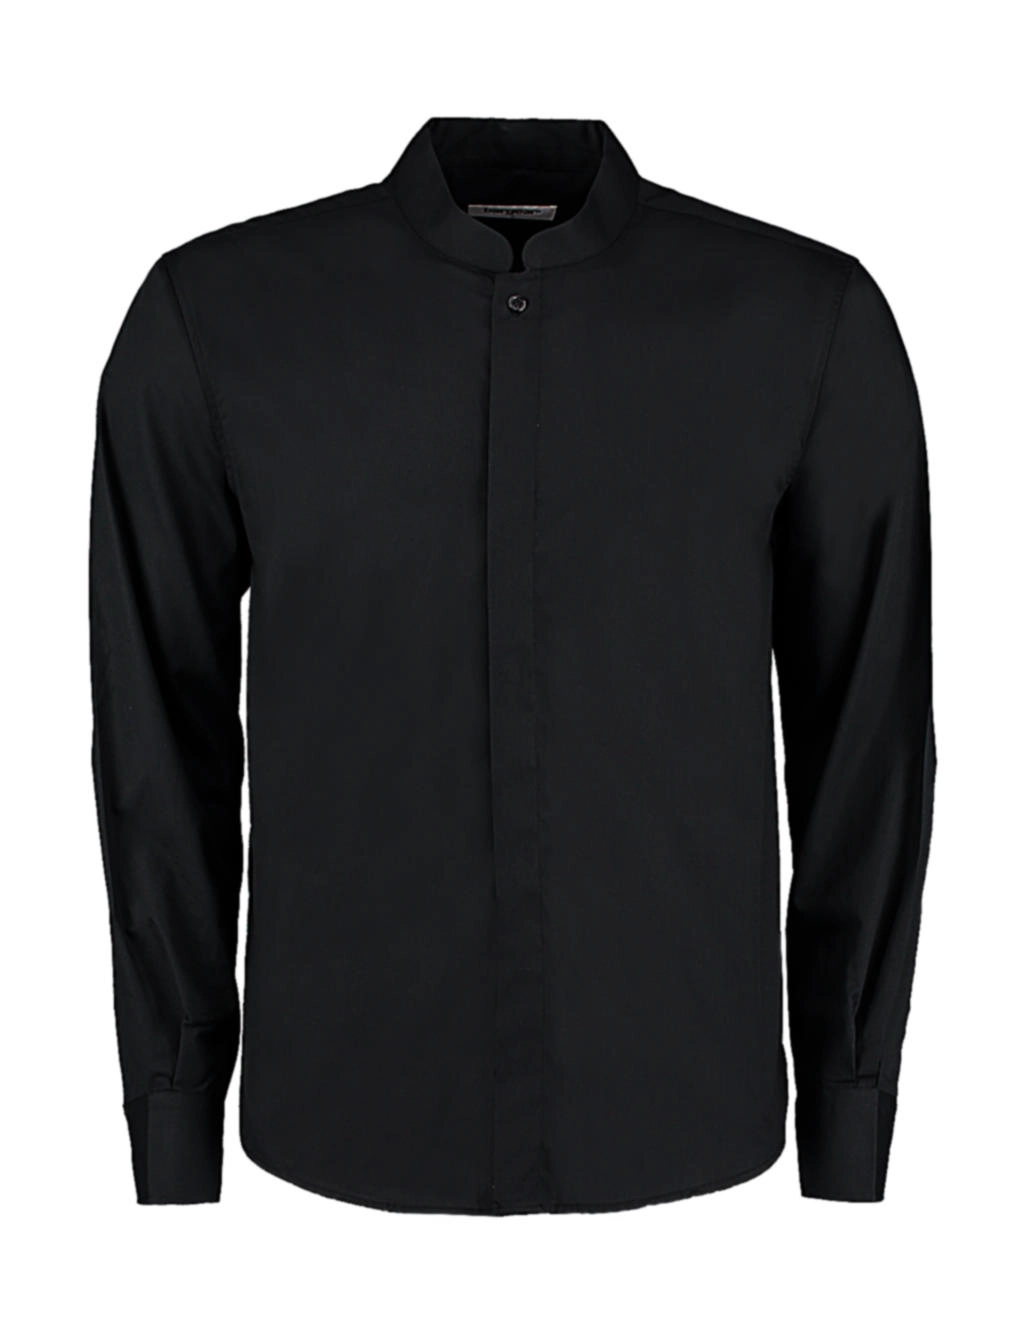 Tailored Fit Mandarin Collar Shirt zum Besticken und Bedrucken in der Farbe Black mit Ihren Logo, Schriftzug oder Motiv.